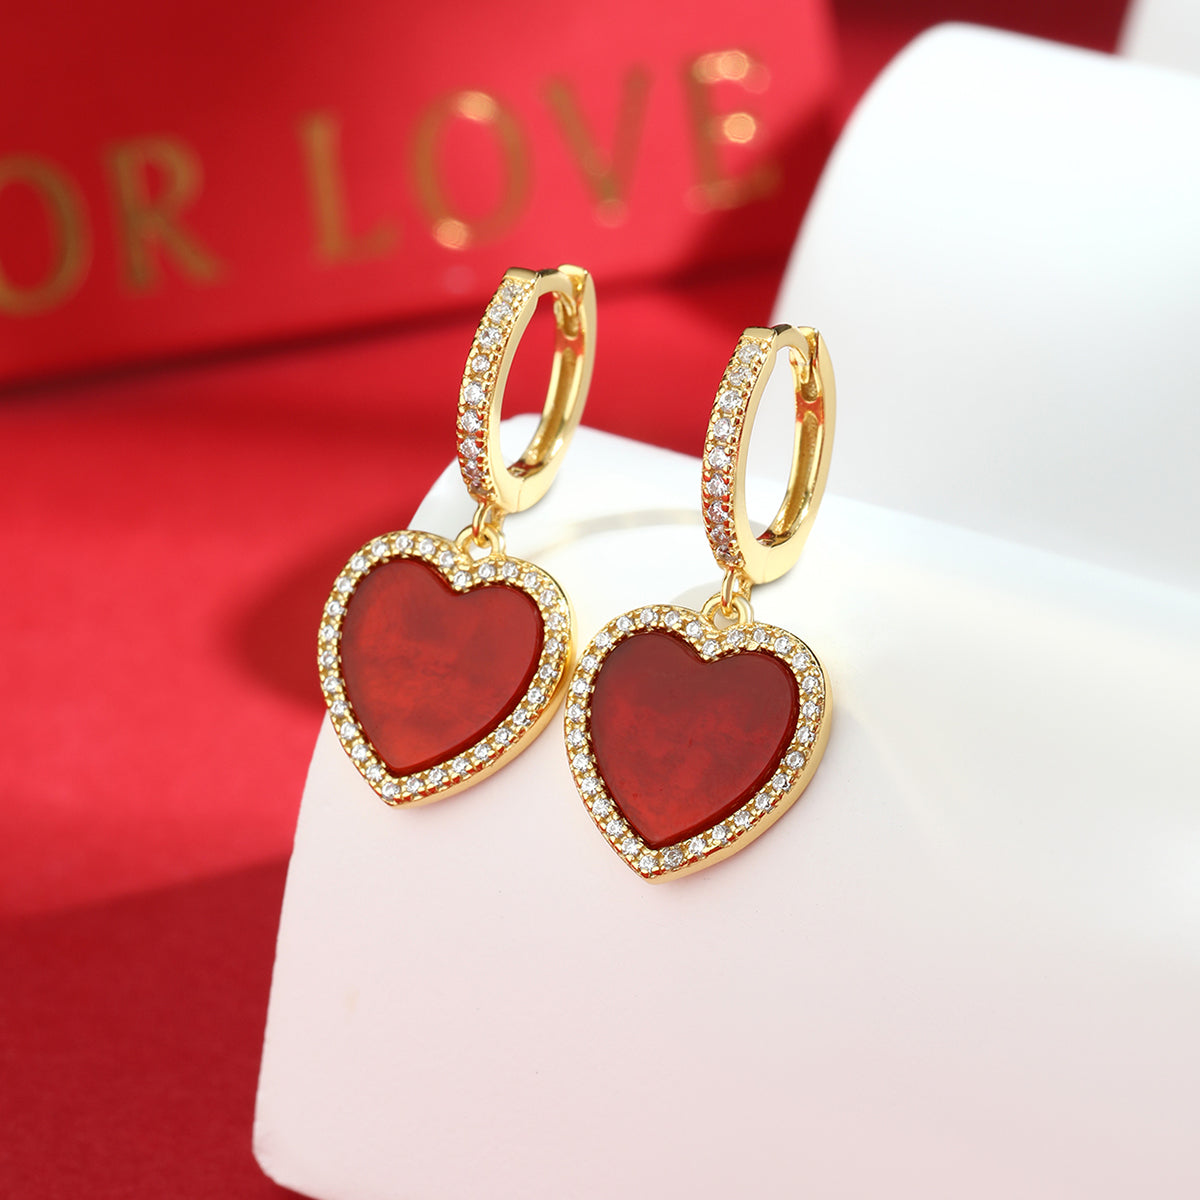 Vintage Style Luxurious Romantic Heart Shape Sterling Silver Plating Inlay Malachite Carnelian Zircon Women's Earrings Necklace